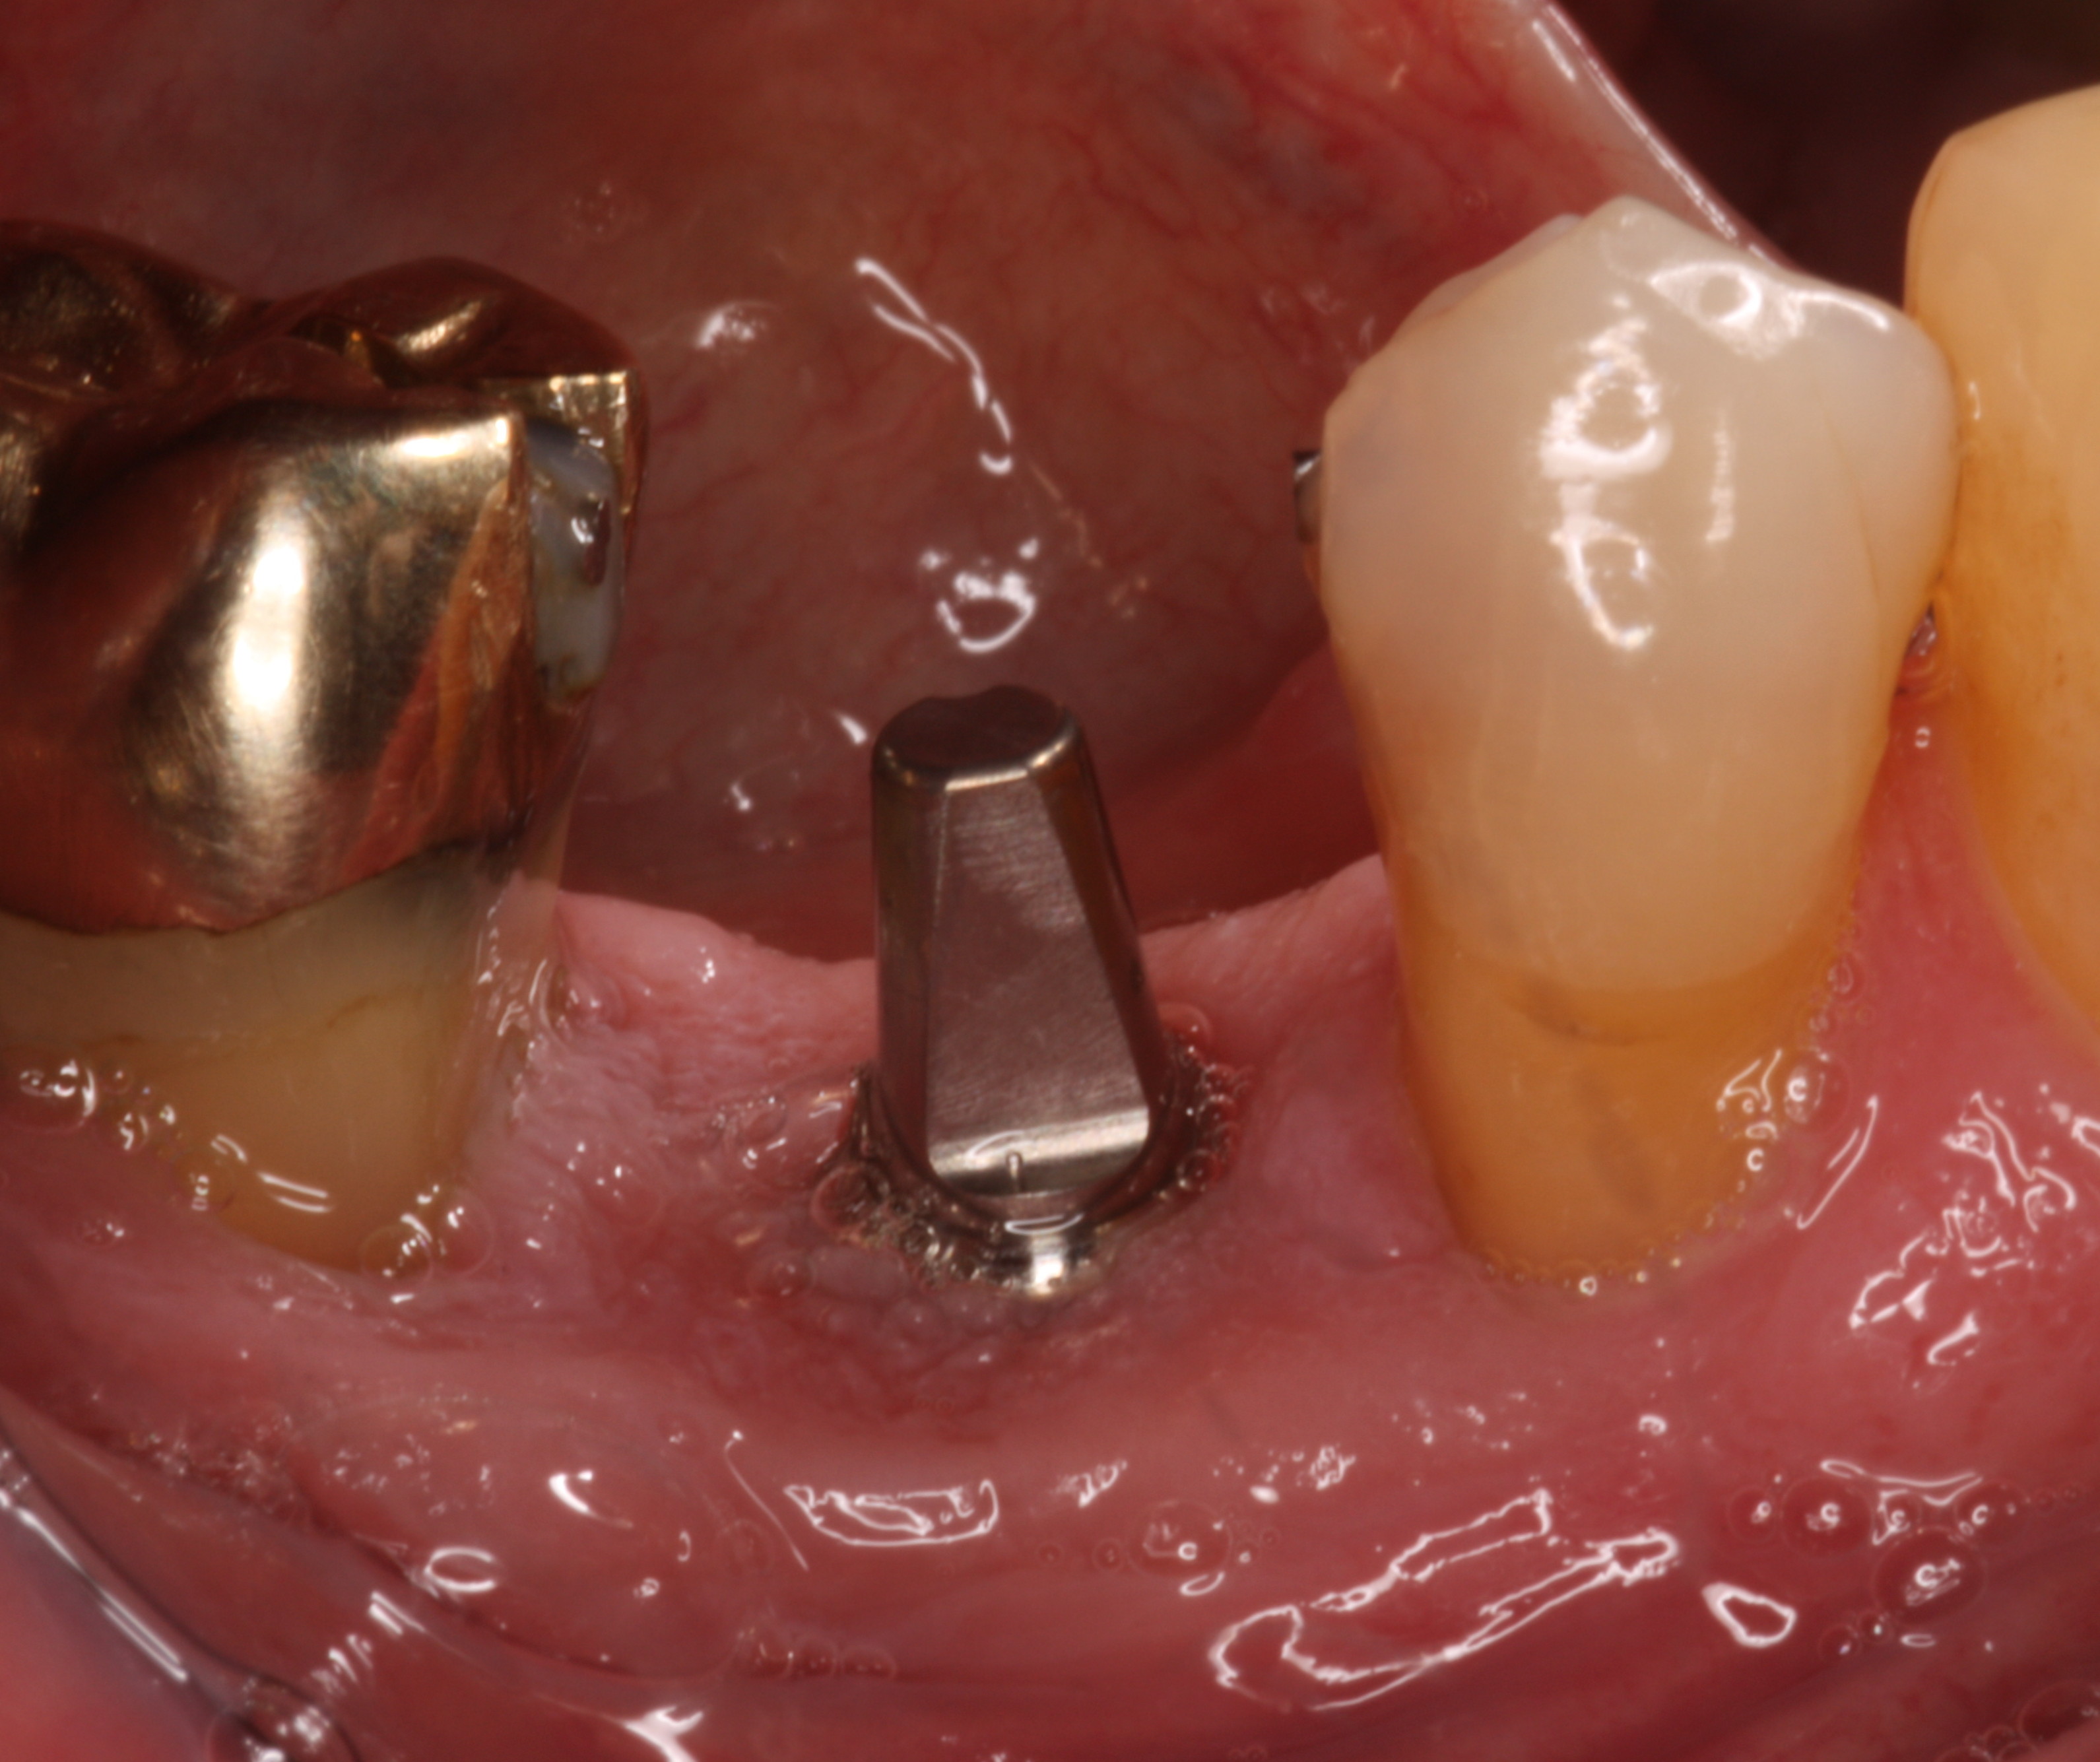 Prognosis-Dental Implants & Gum Disease